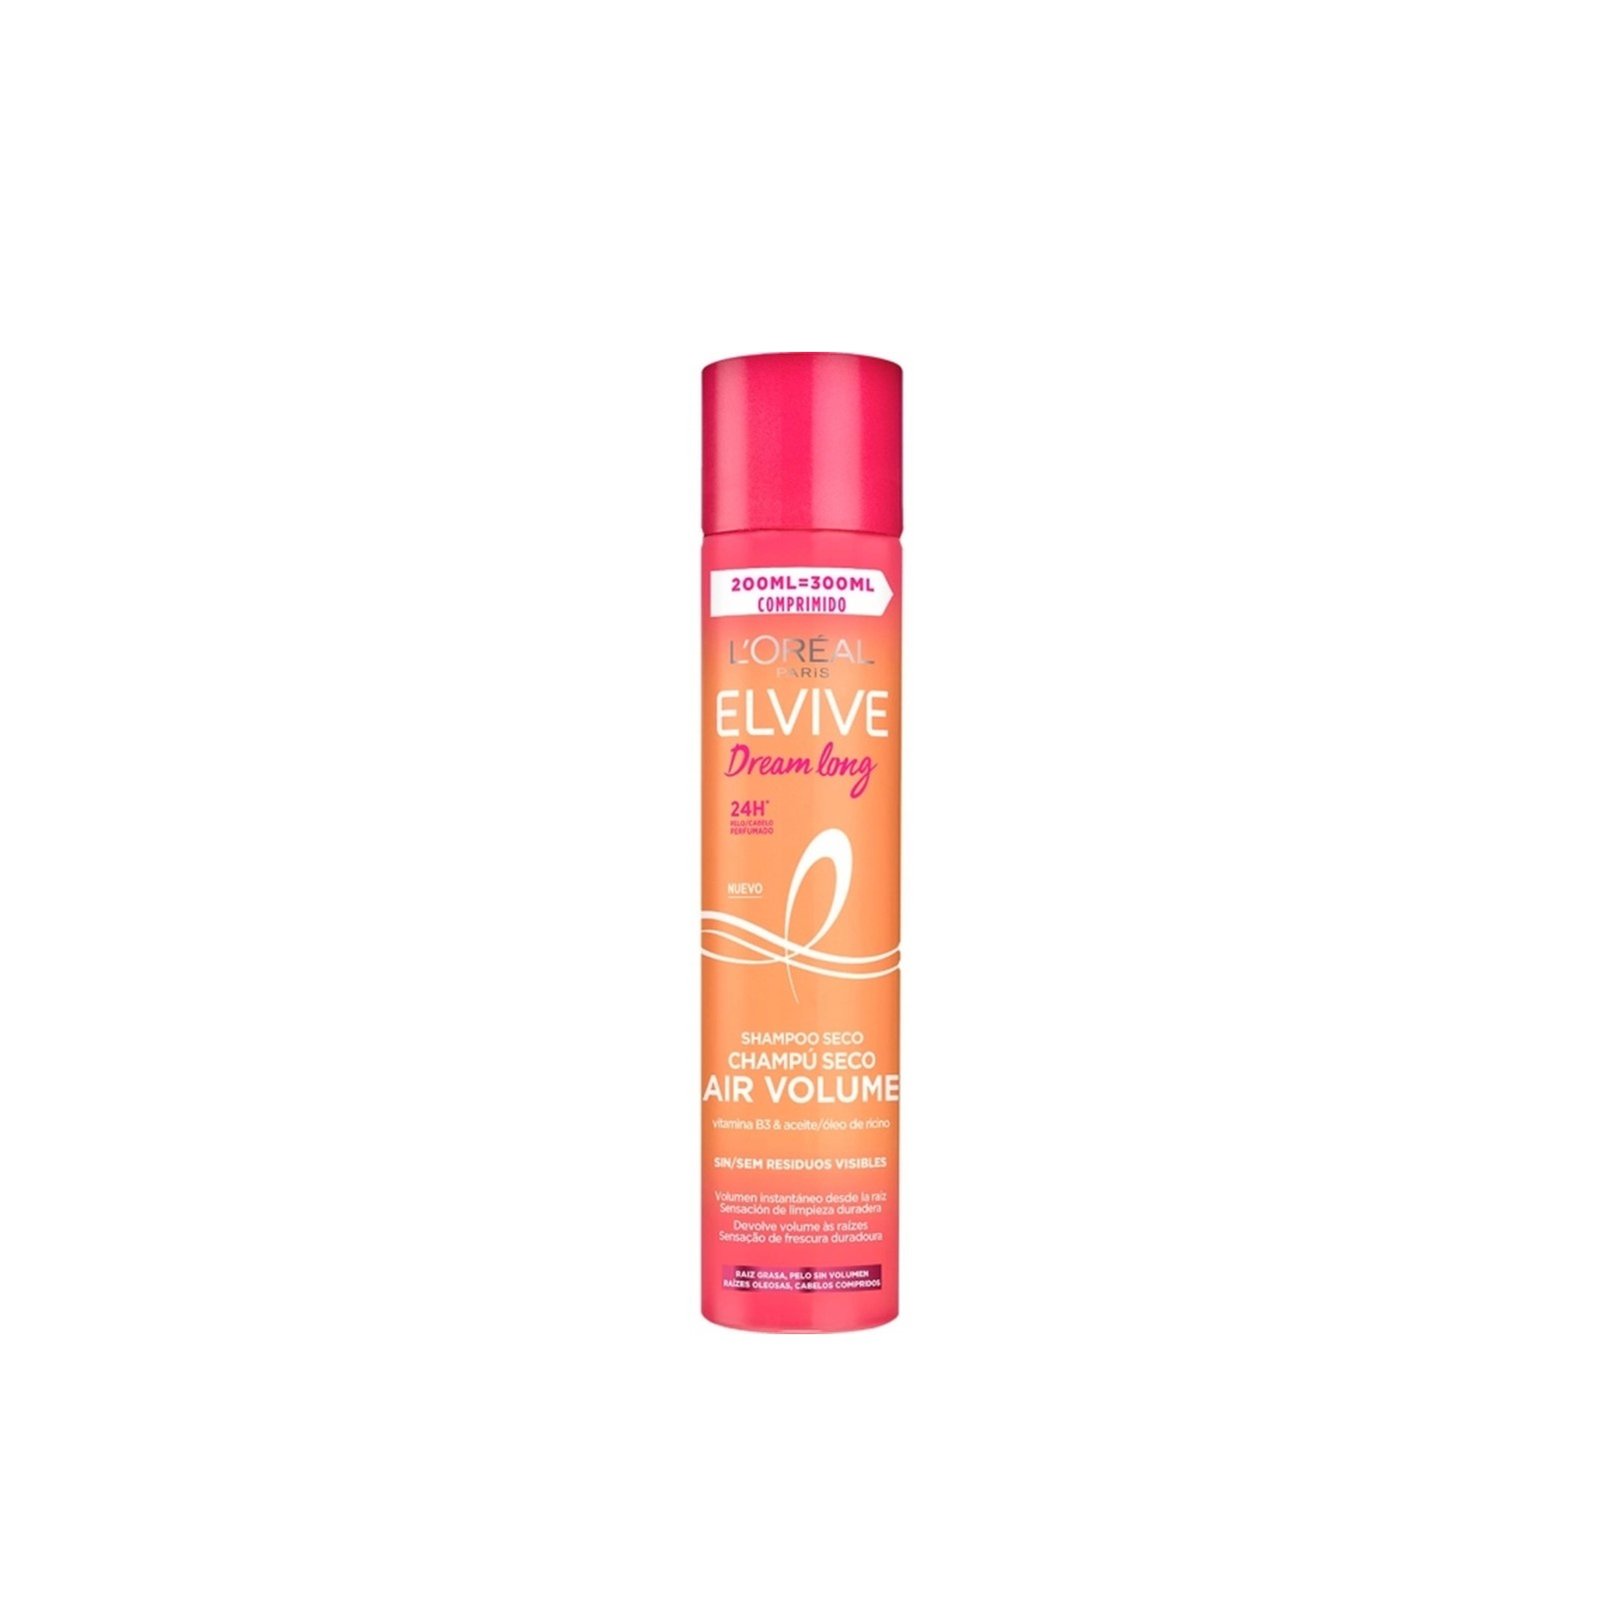 L'Oréal Paris Elvive Dream Long Air Volume Dry Shampoo 200ml (6.76 fl oz)